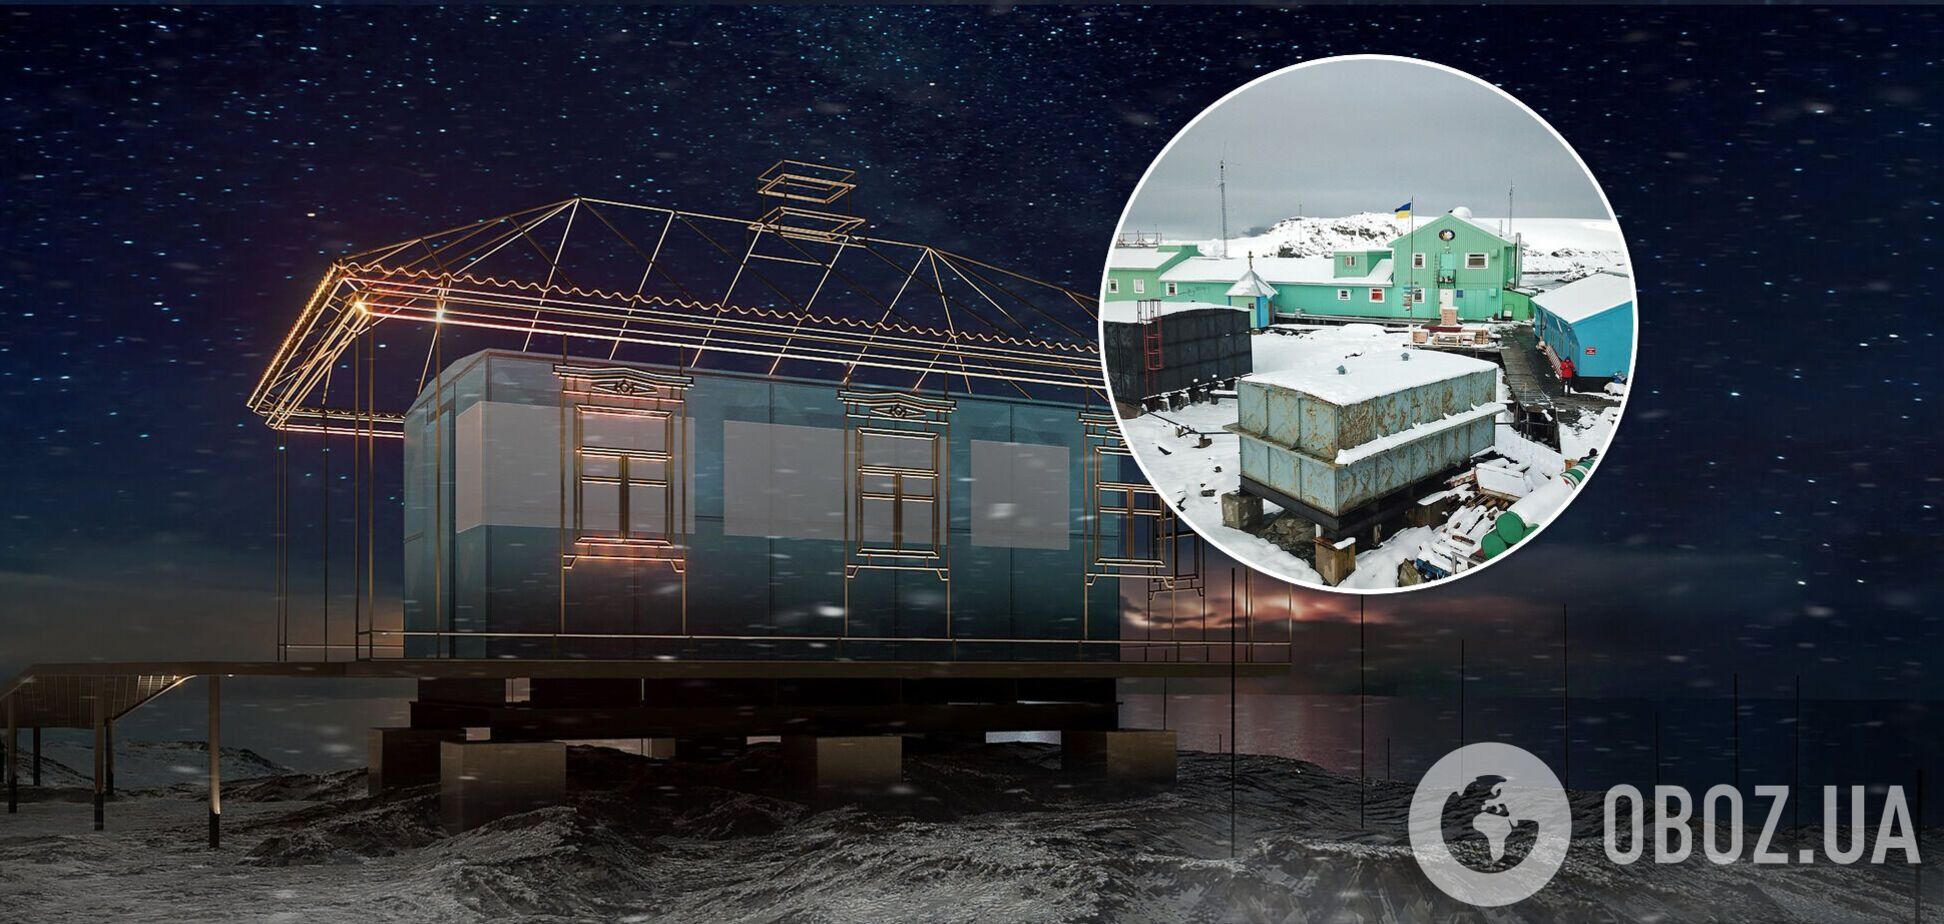 На станции 'Вернадский' в Антарктиде появится украинская хата: арт-инсталляцией станет топливный бак. Фото